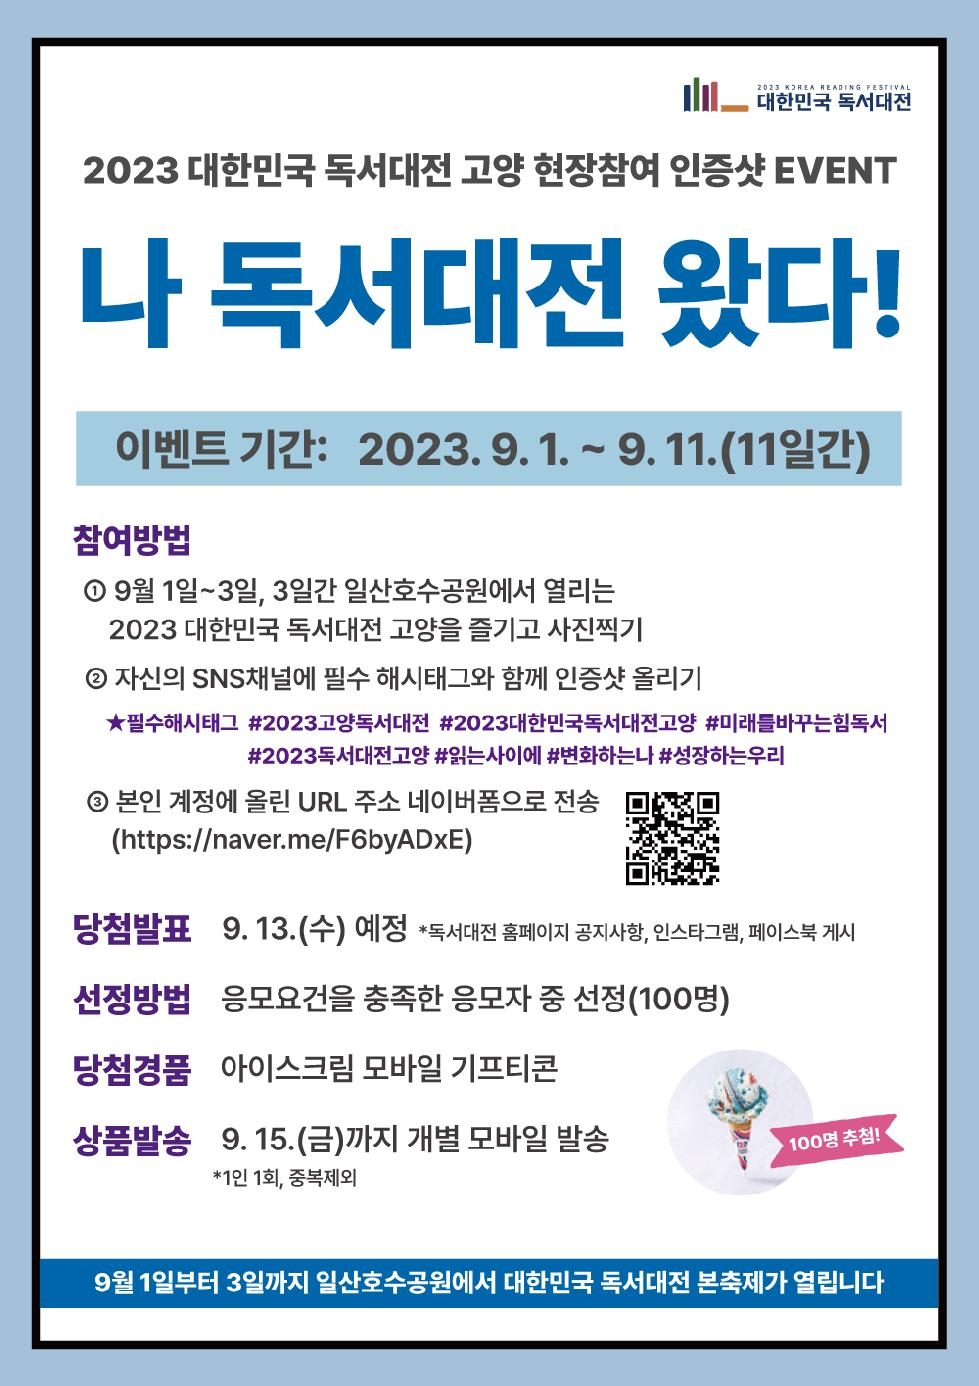 ‘2023 대한민국 독서대전 고양’ 현장 참여 인증 이벤트 ‘나 독서대전